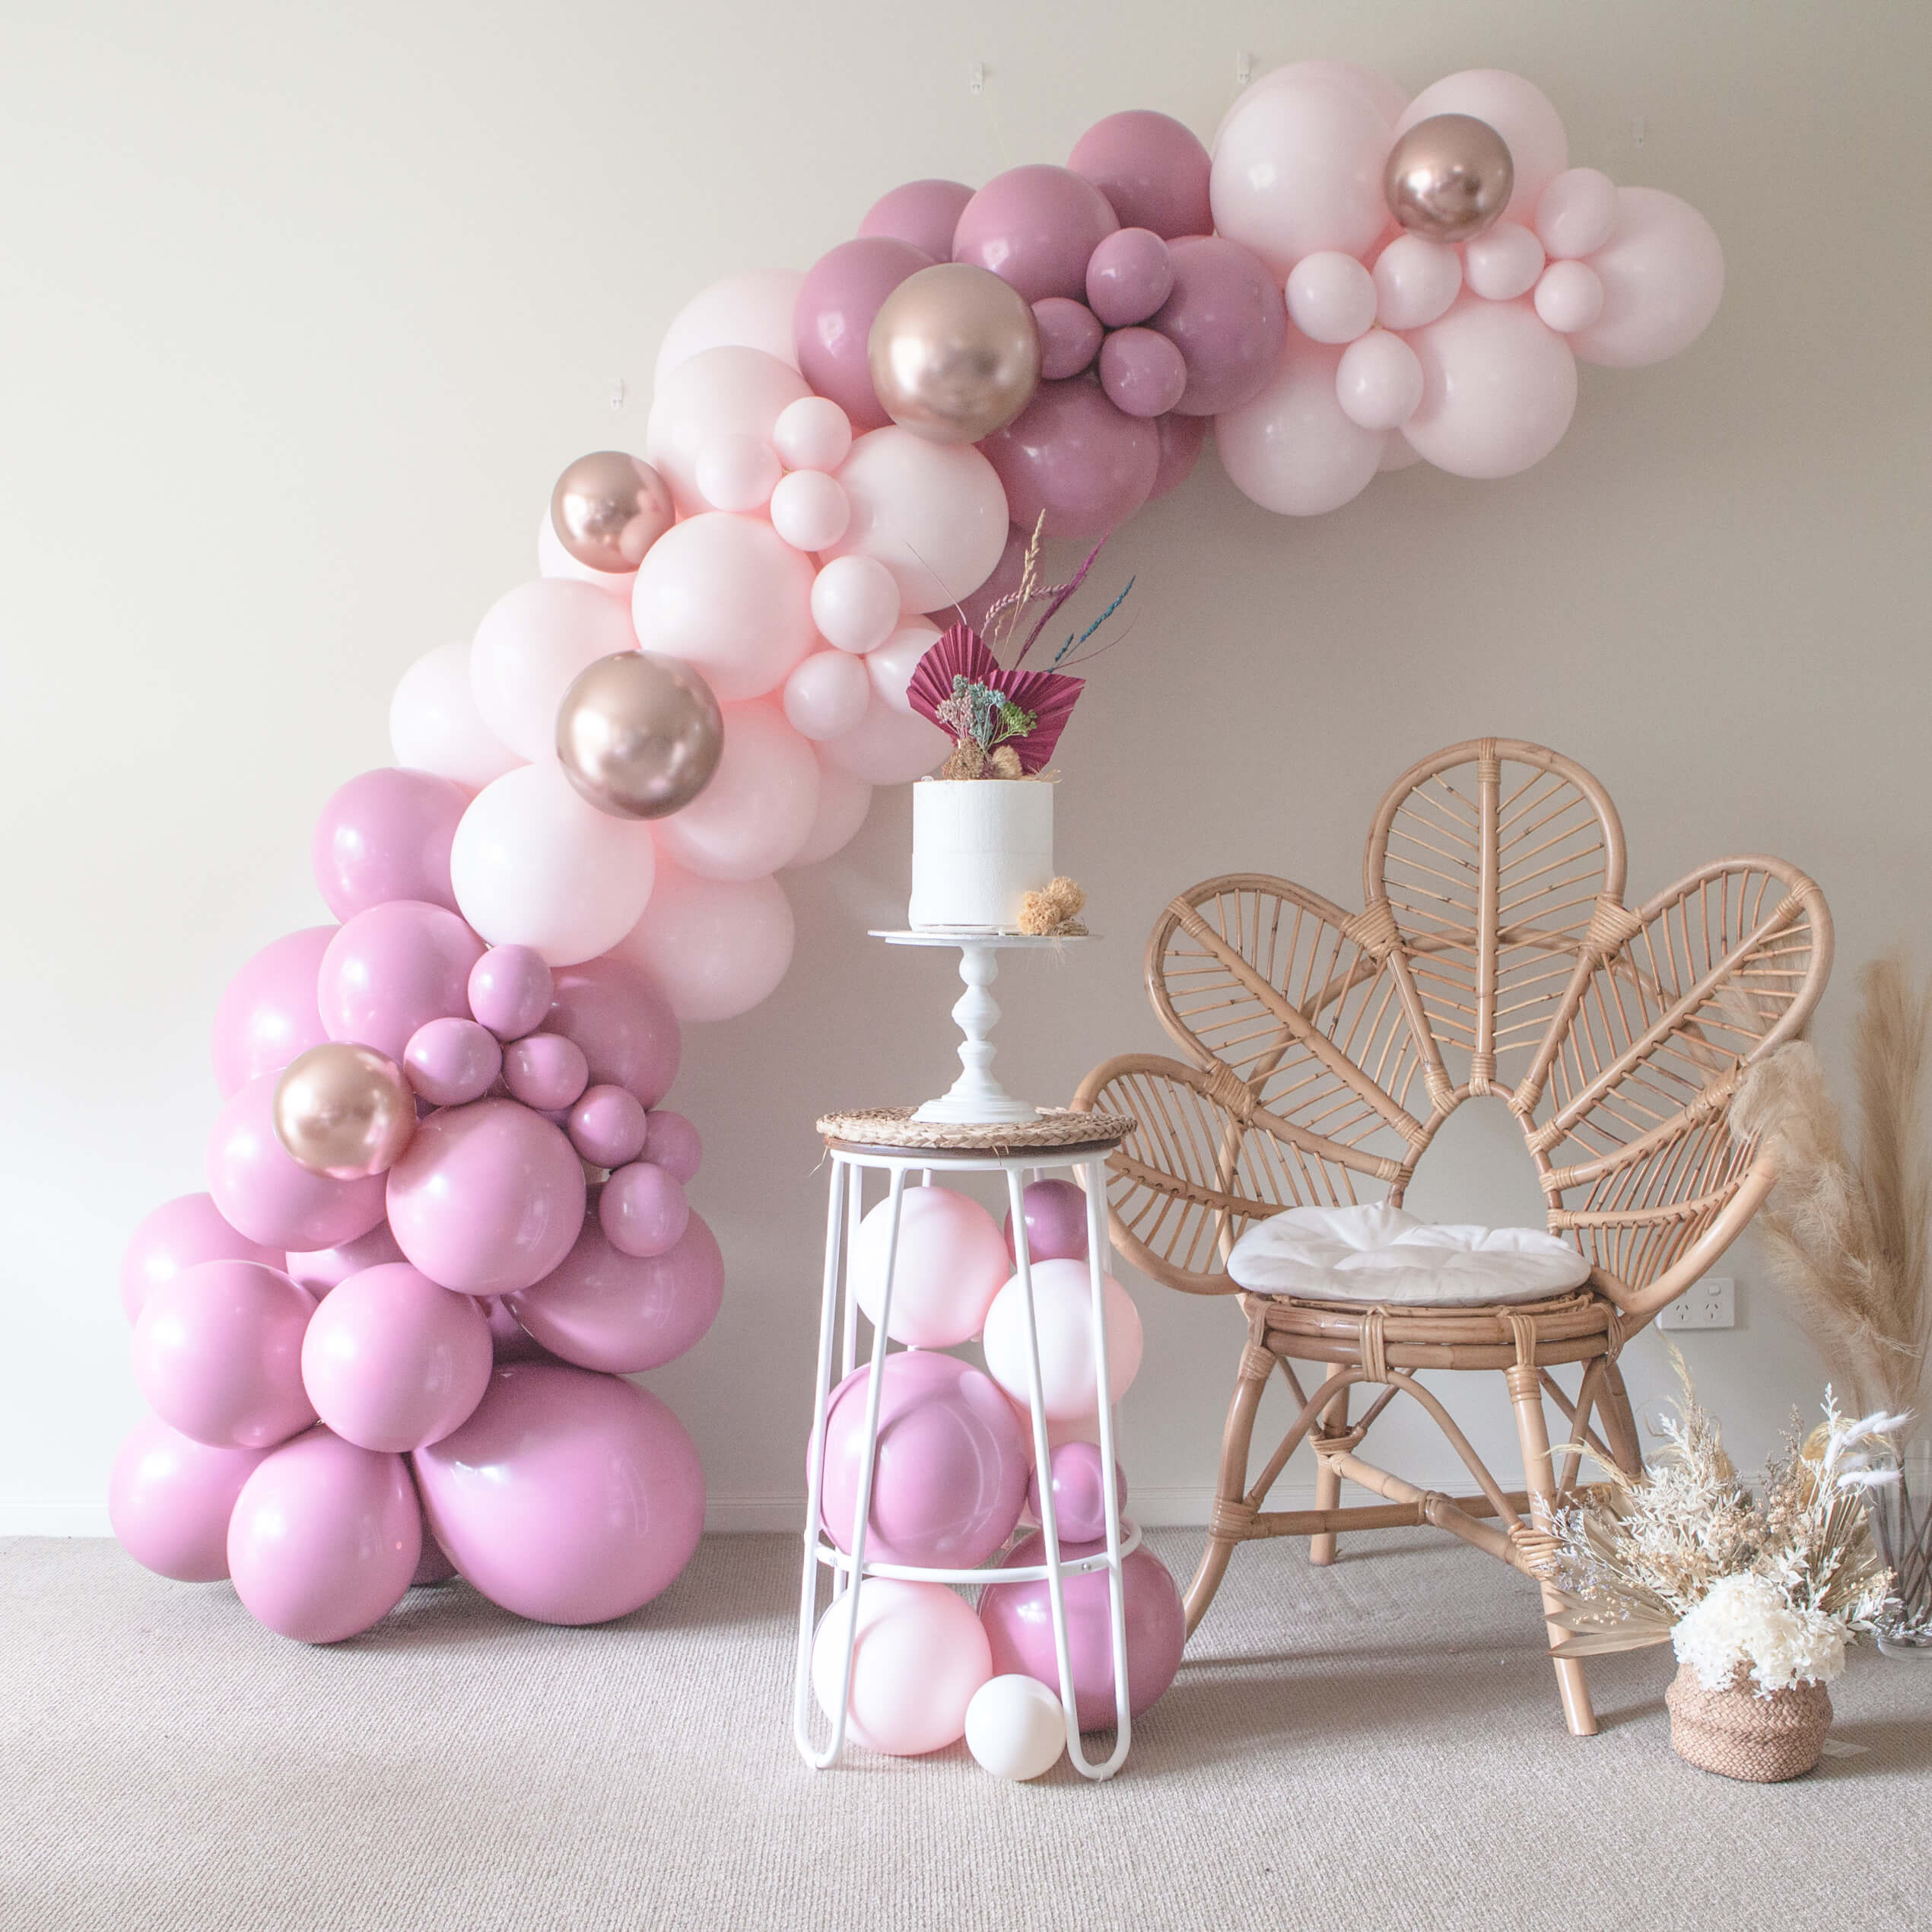 Luxe Candy Floss Balloon Garland DIY Kit